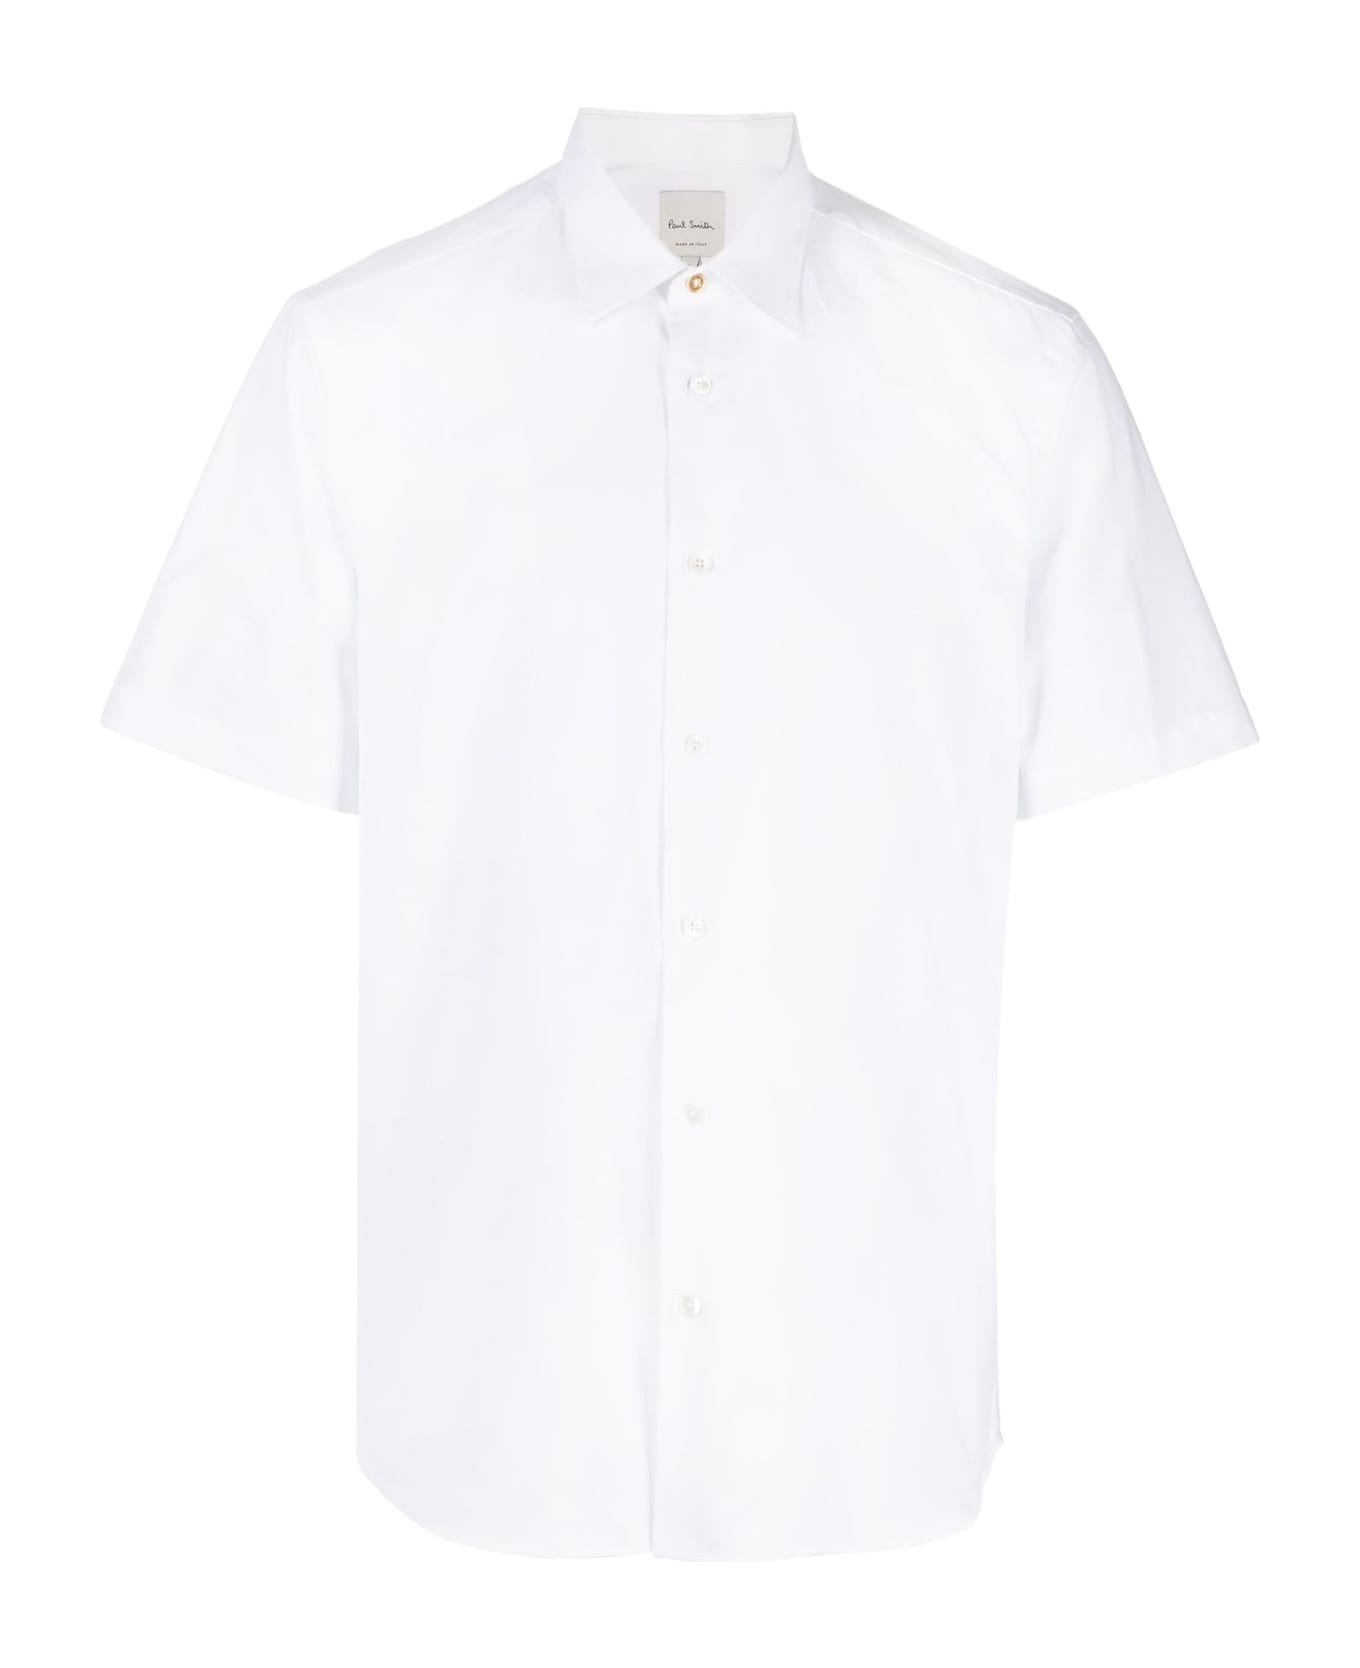 Paul Smith Shirts White - White